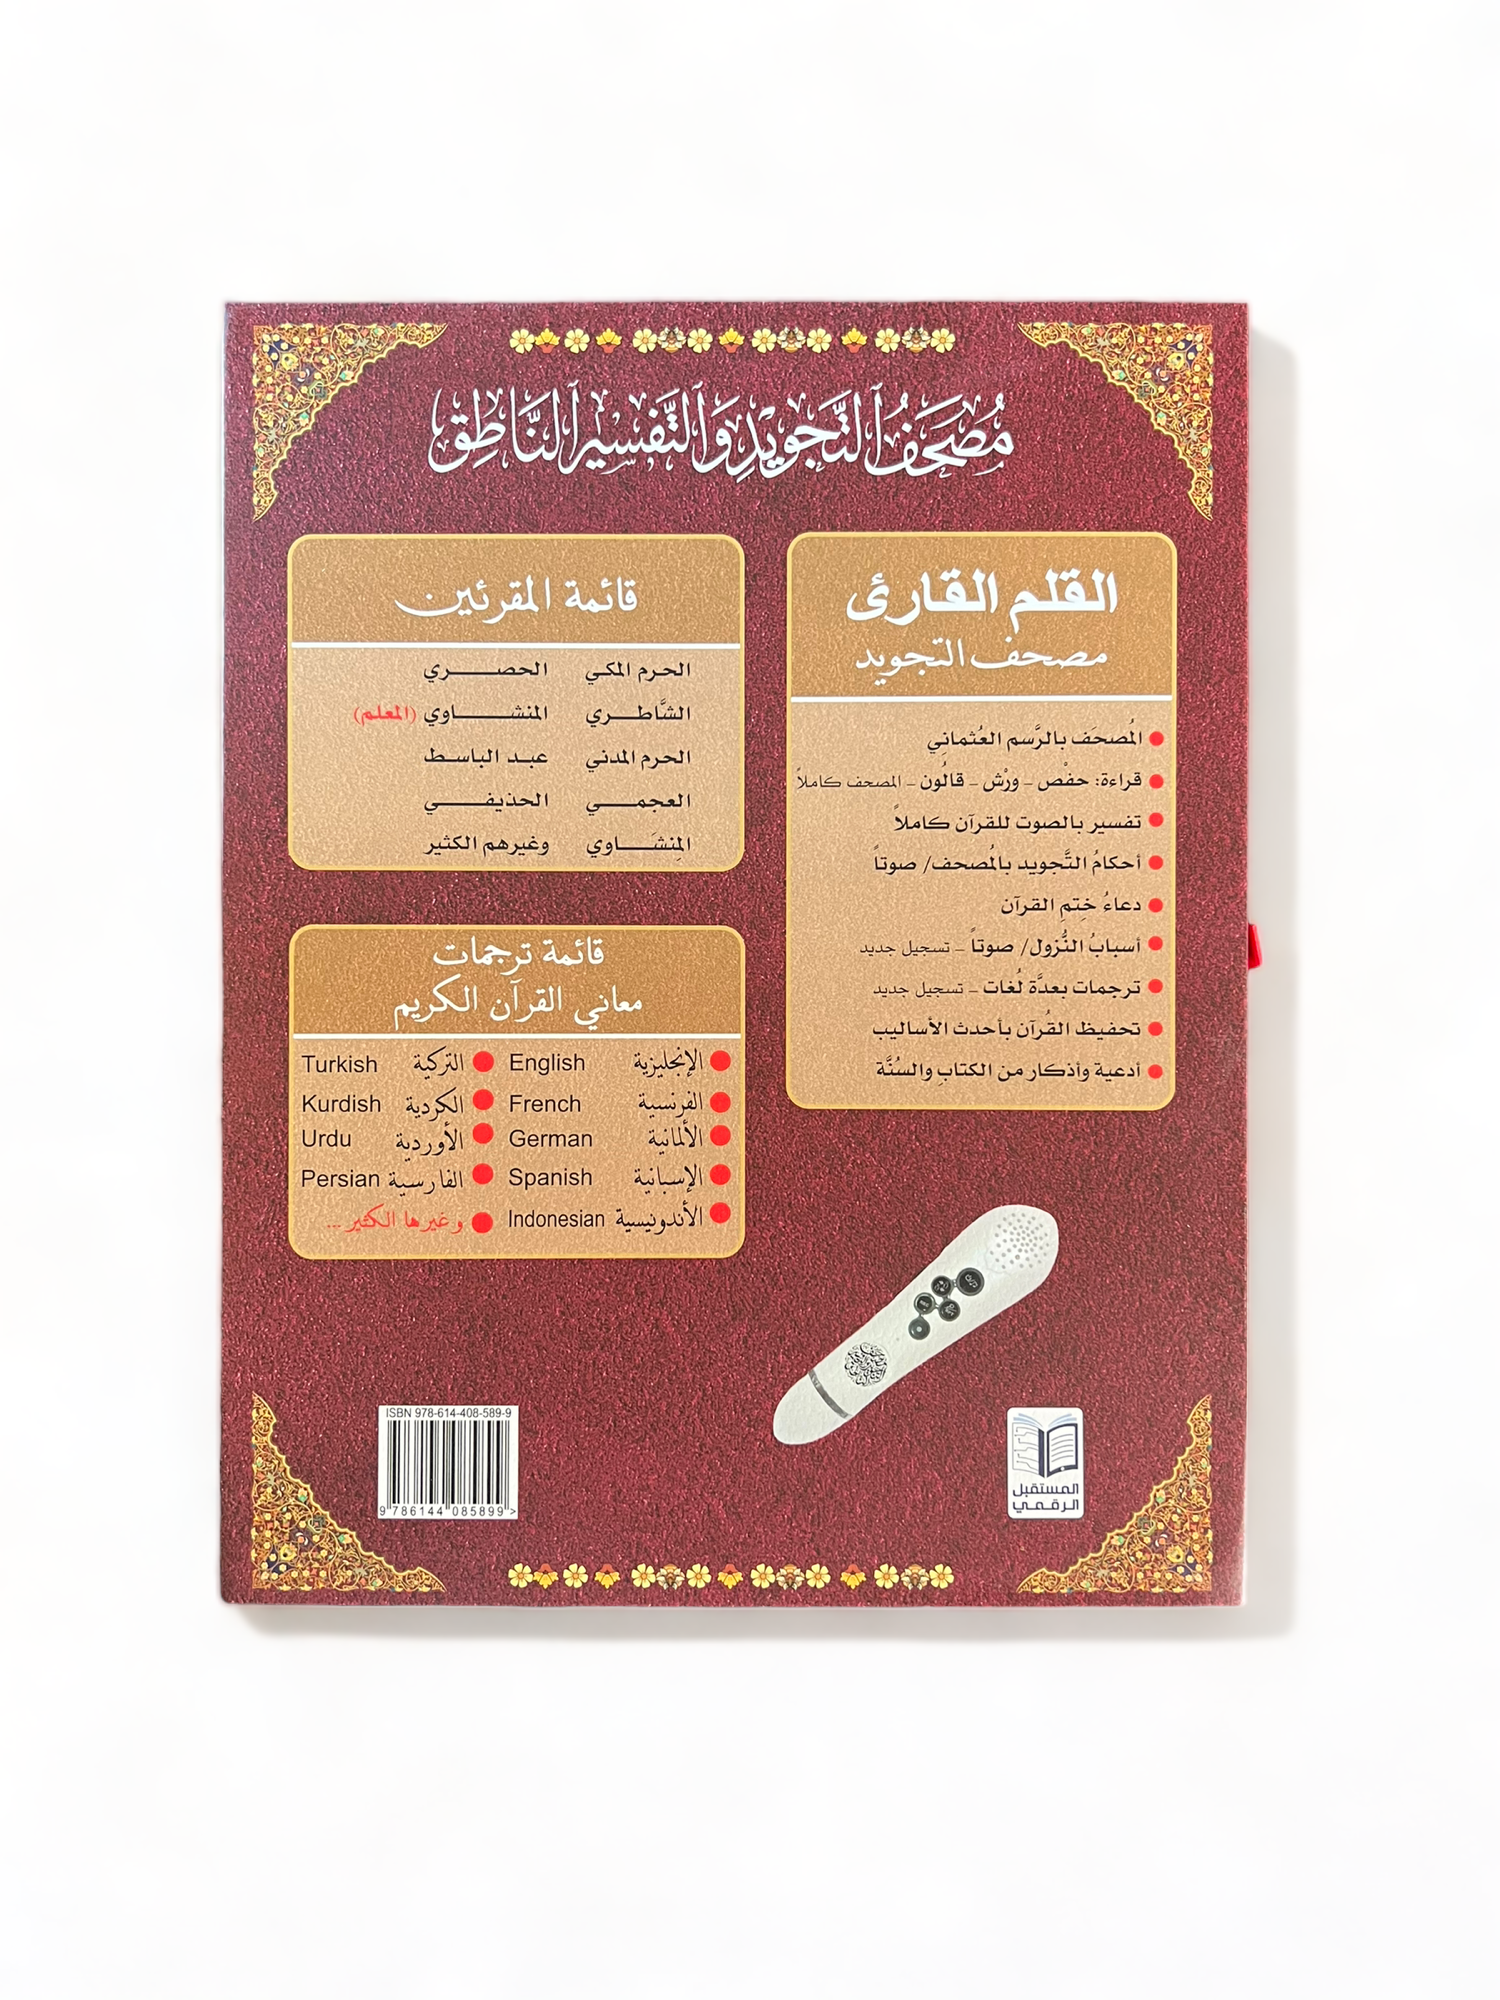 Koran met elektronische pen (8 Gb - 18 voordragers) met multifunctionele Koran voor meerdere boeken (GROOT FORMAAT)